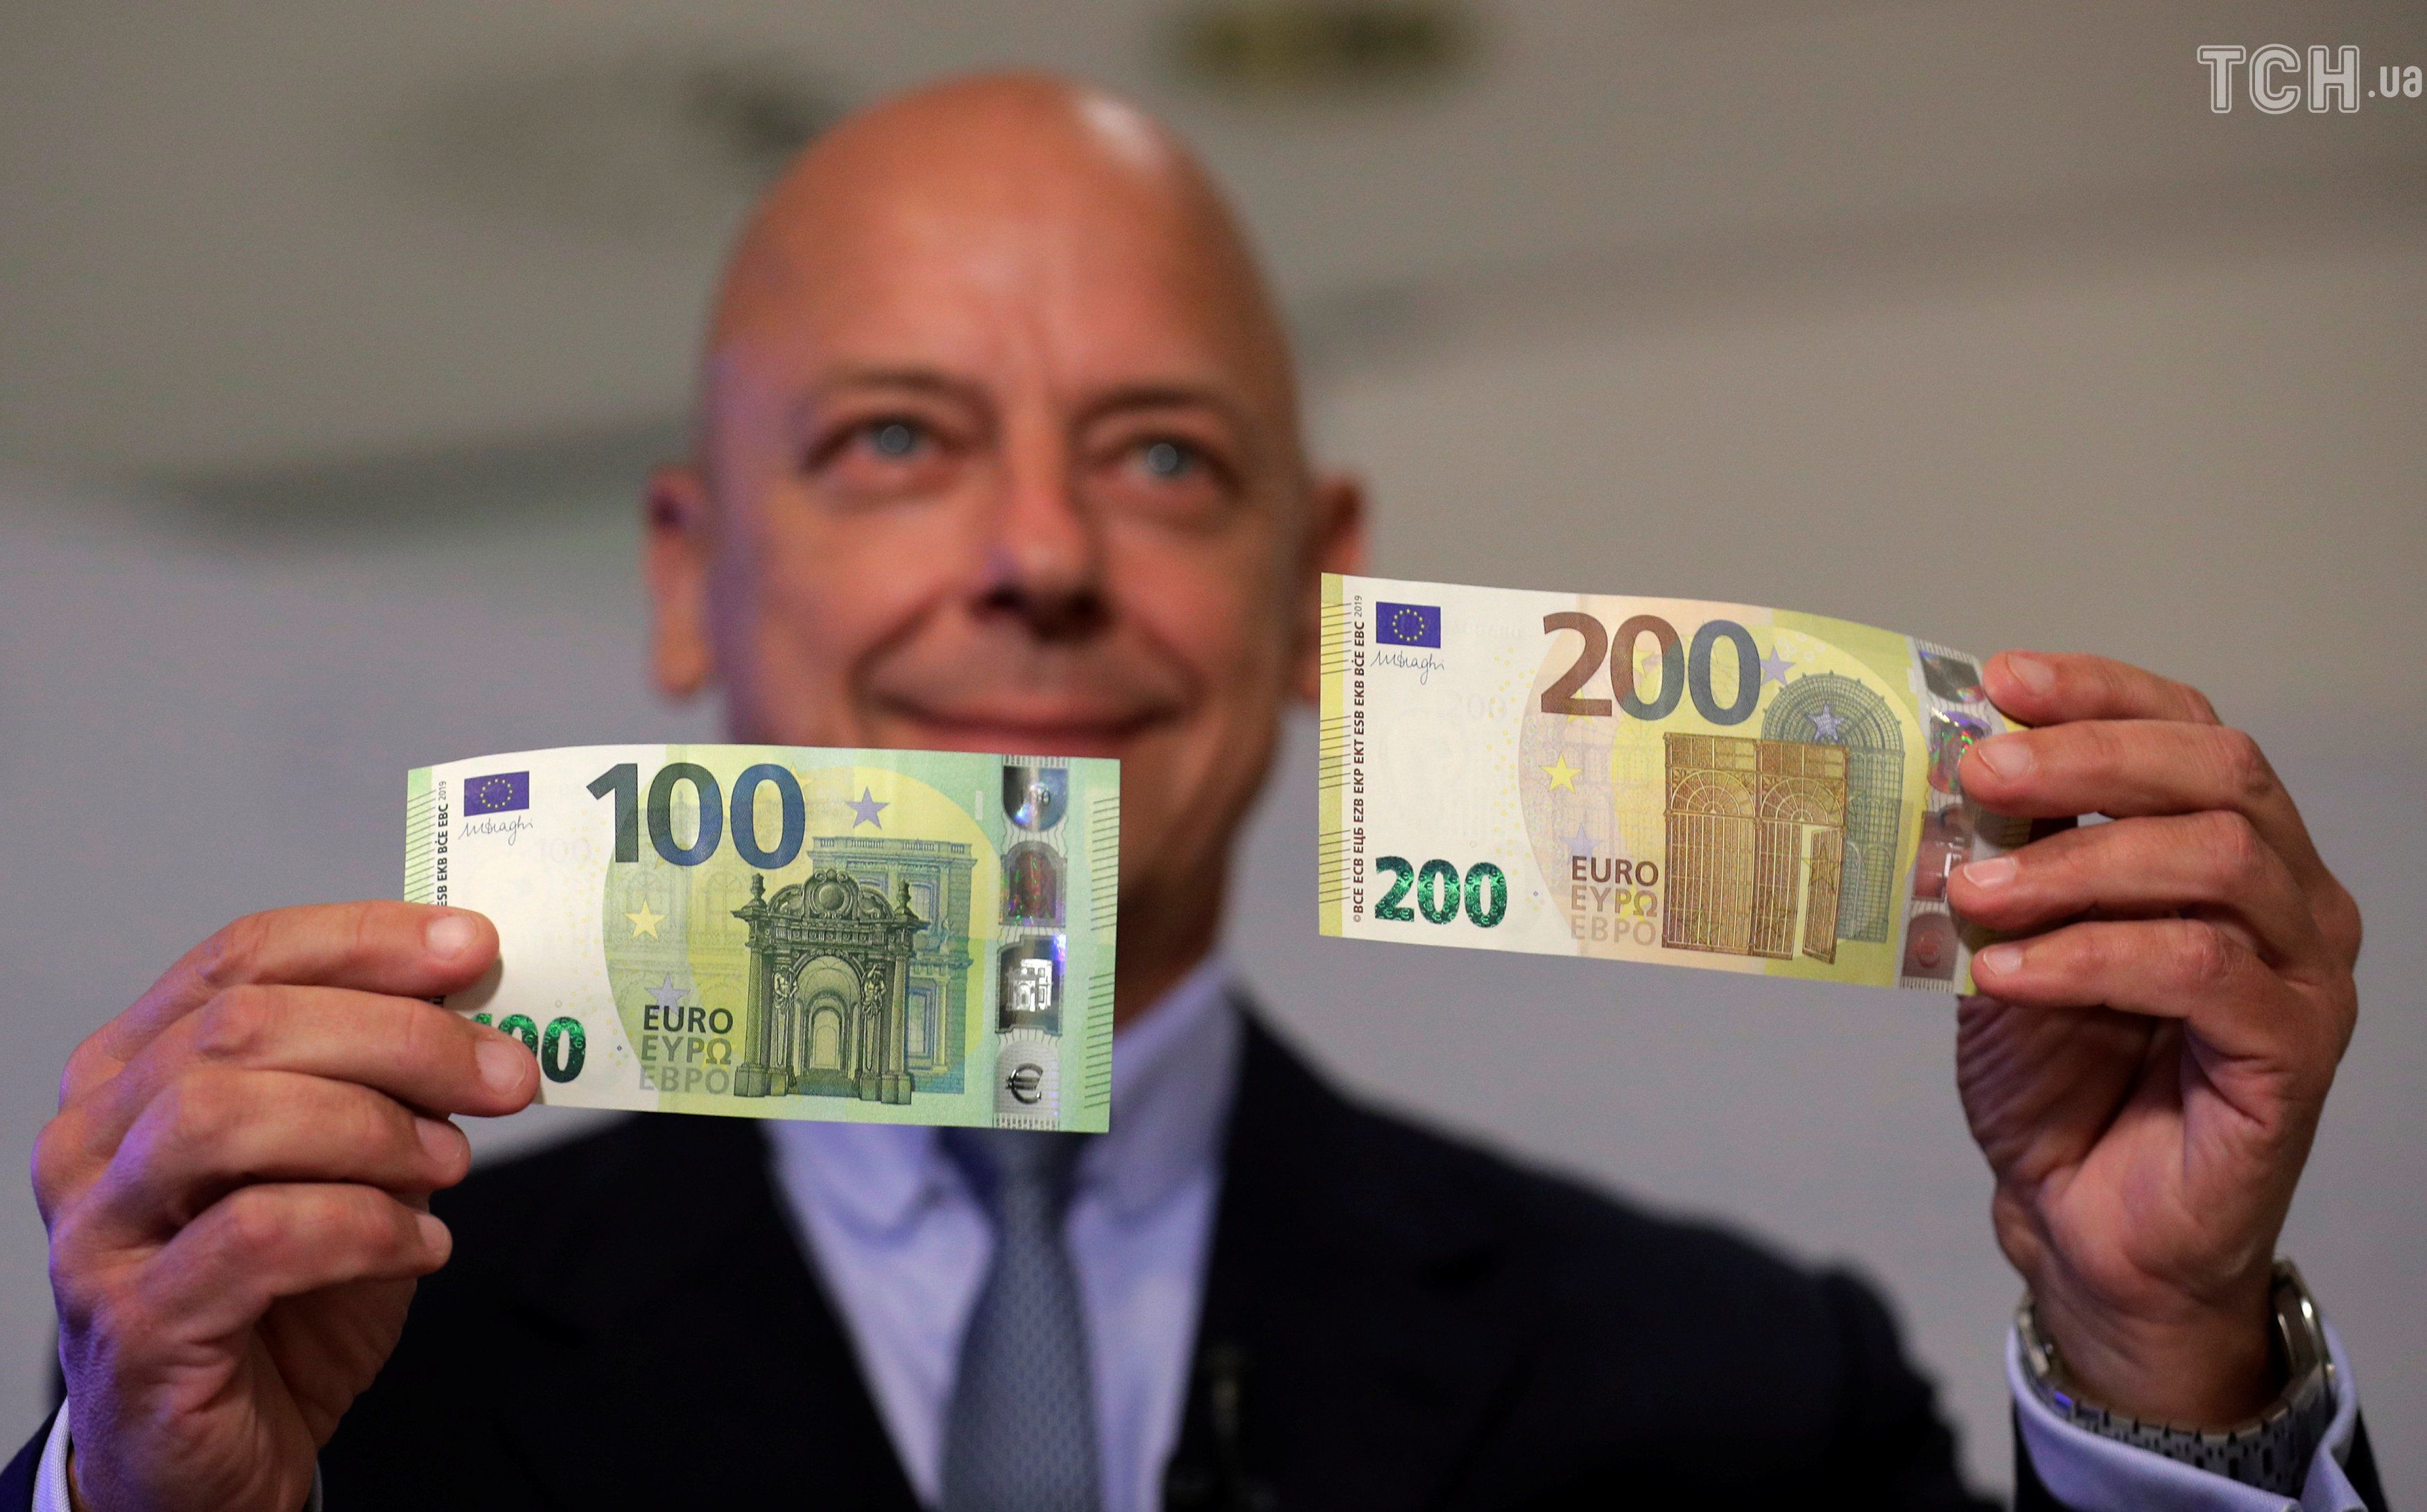 Евро старые купюры. Евро банкноты номинал 200. Новая купюра 100 евро. Купюра 200 евро. Новый евро банкноты 100 и 200.